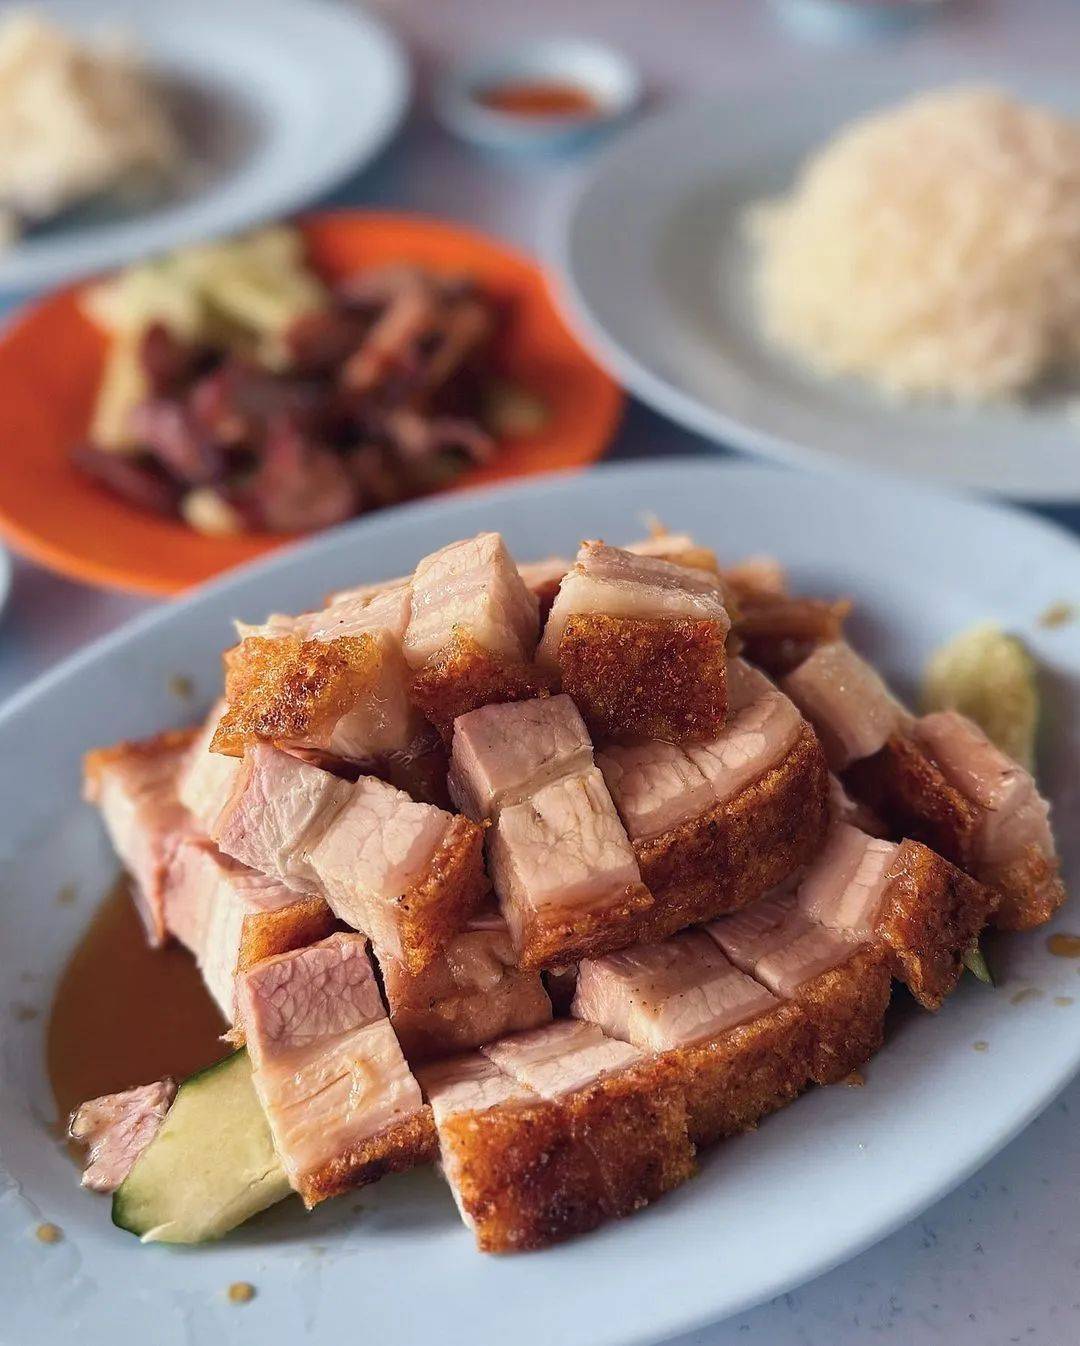 吉隆坡必吃美食超鲜蛤蜊米粉榴莲煎蕊都是当地人私藏餐厅